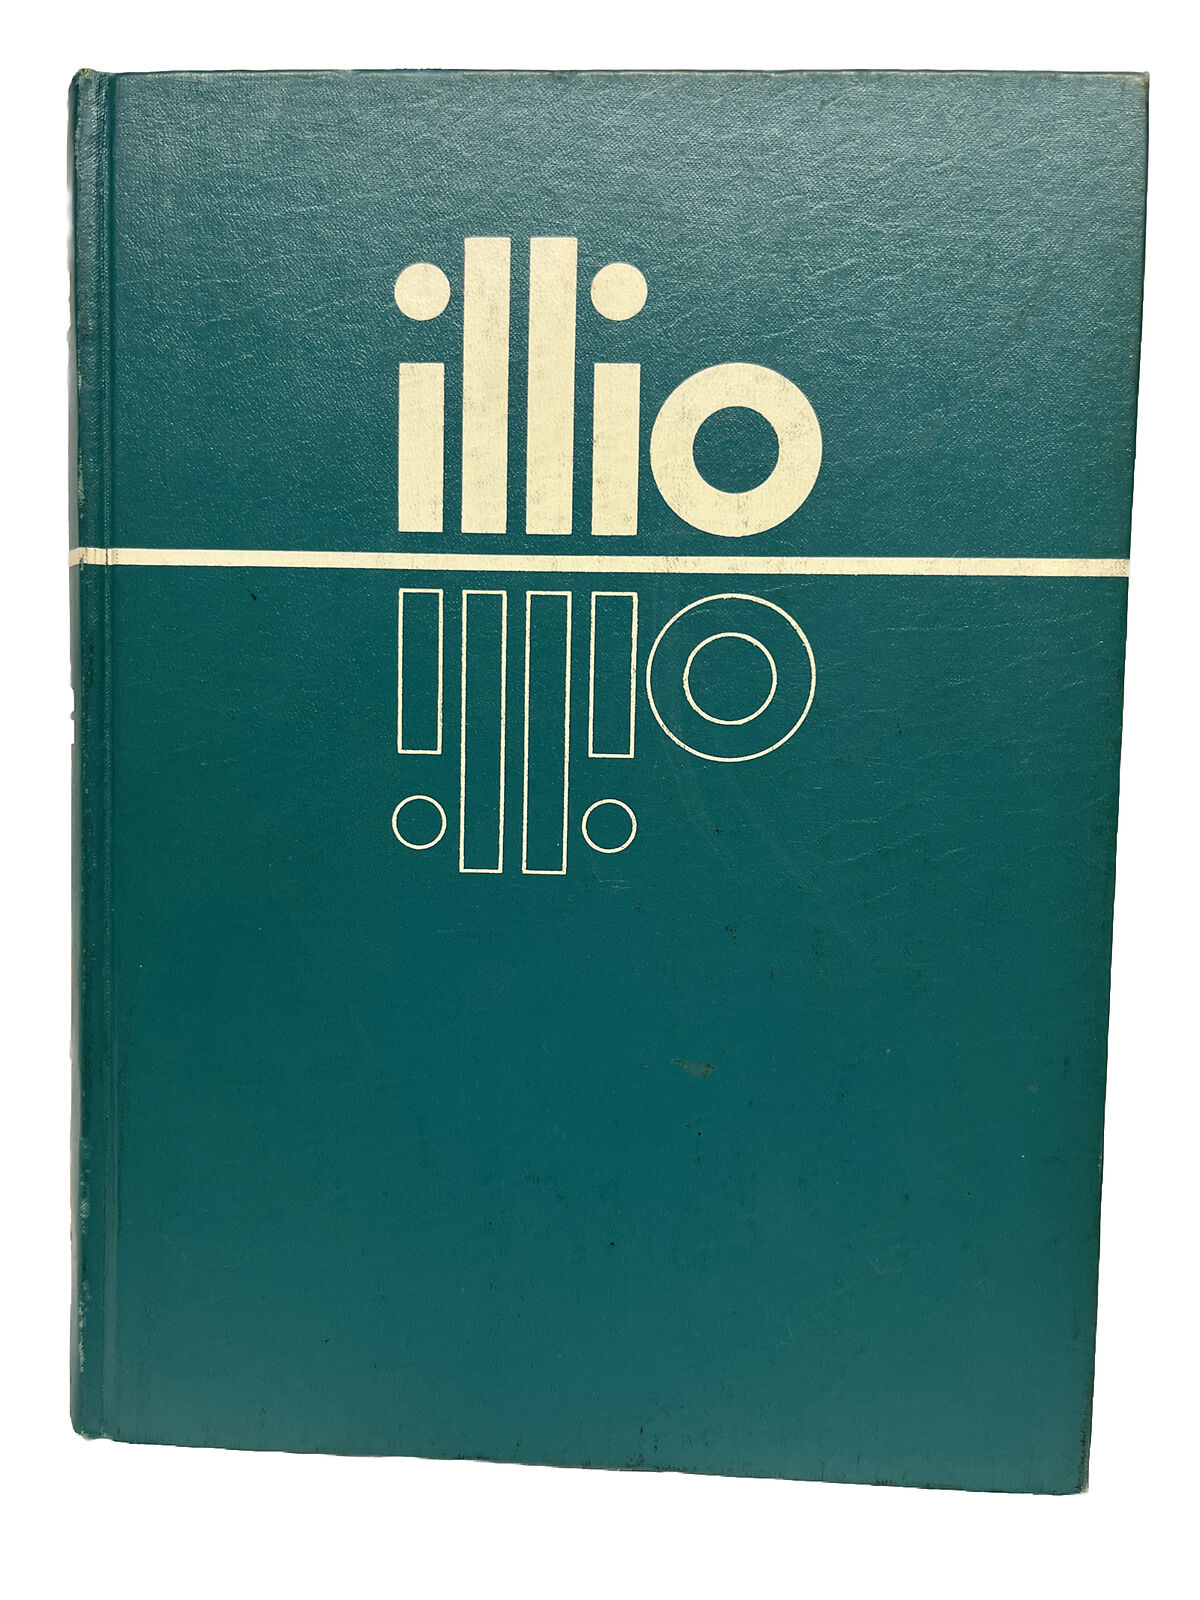 1965 University of Illinois Yearbook The Illio Illini